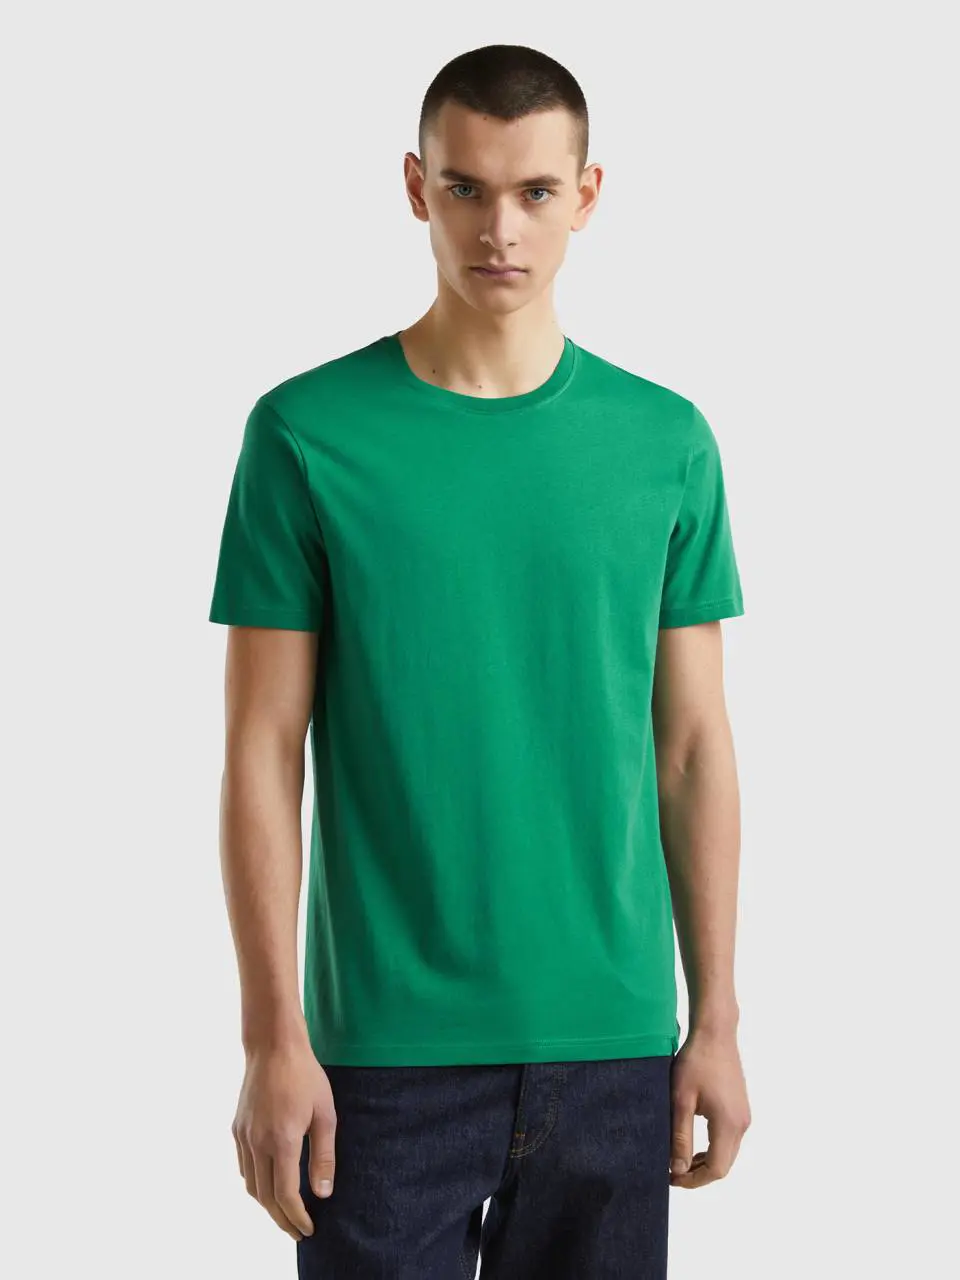 Benetton dark green t-shirt. 1